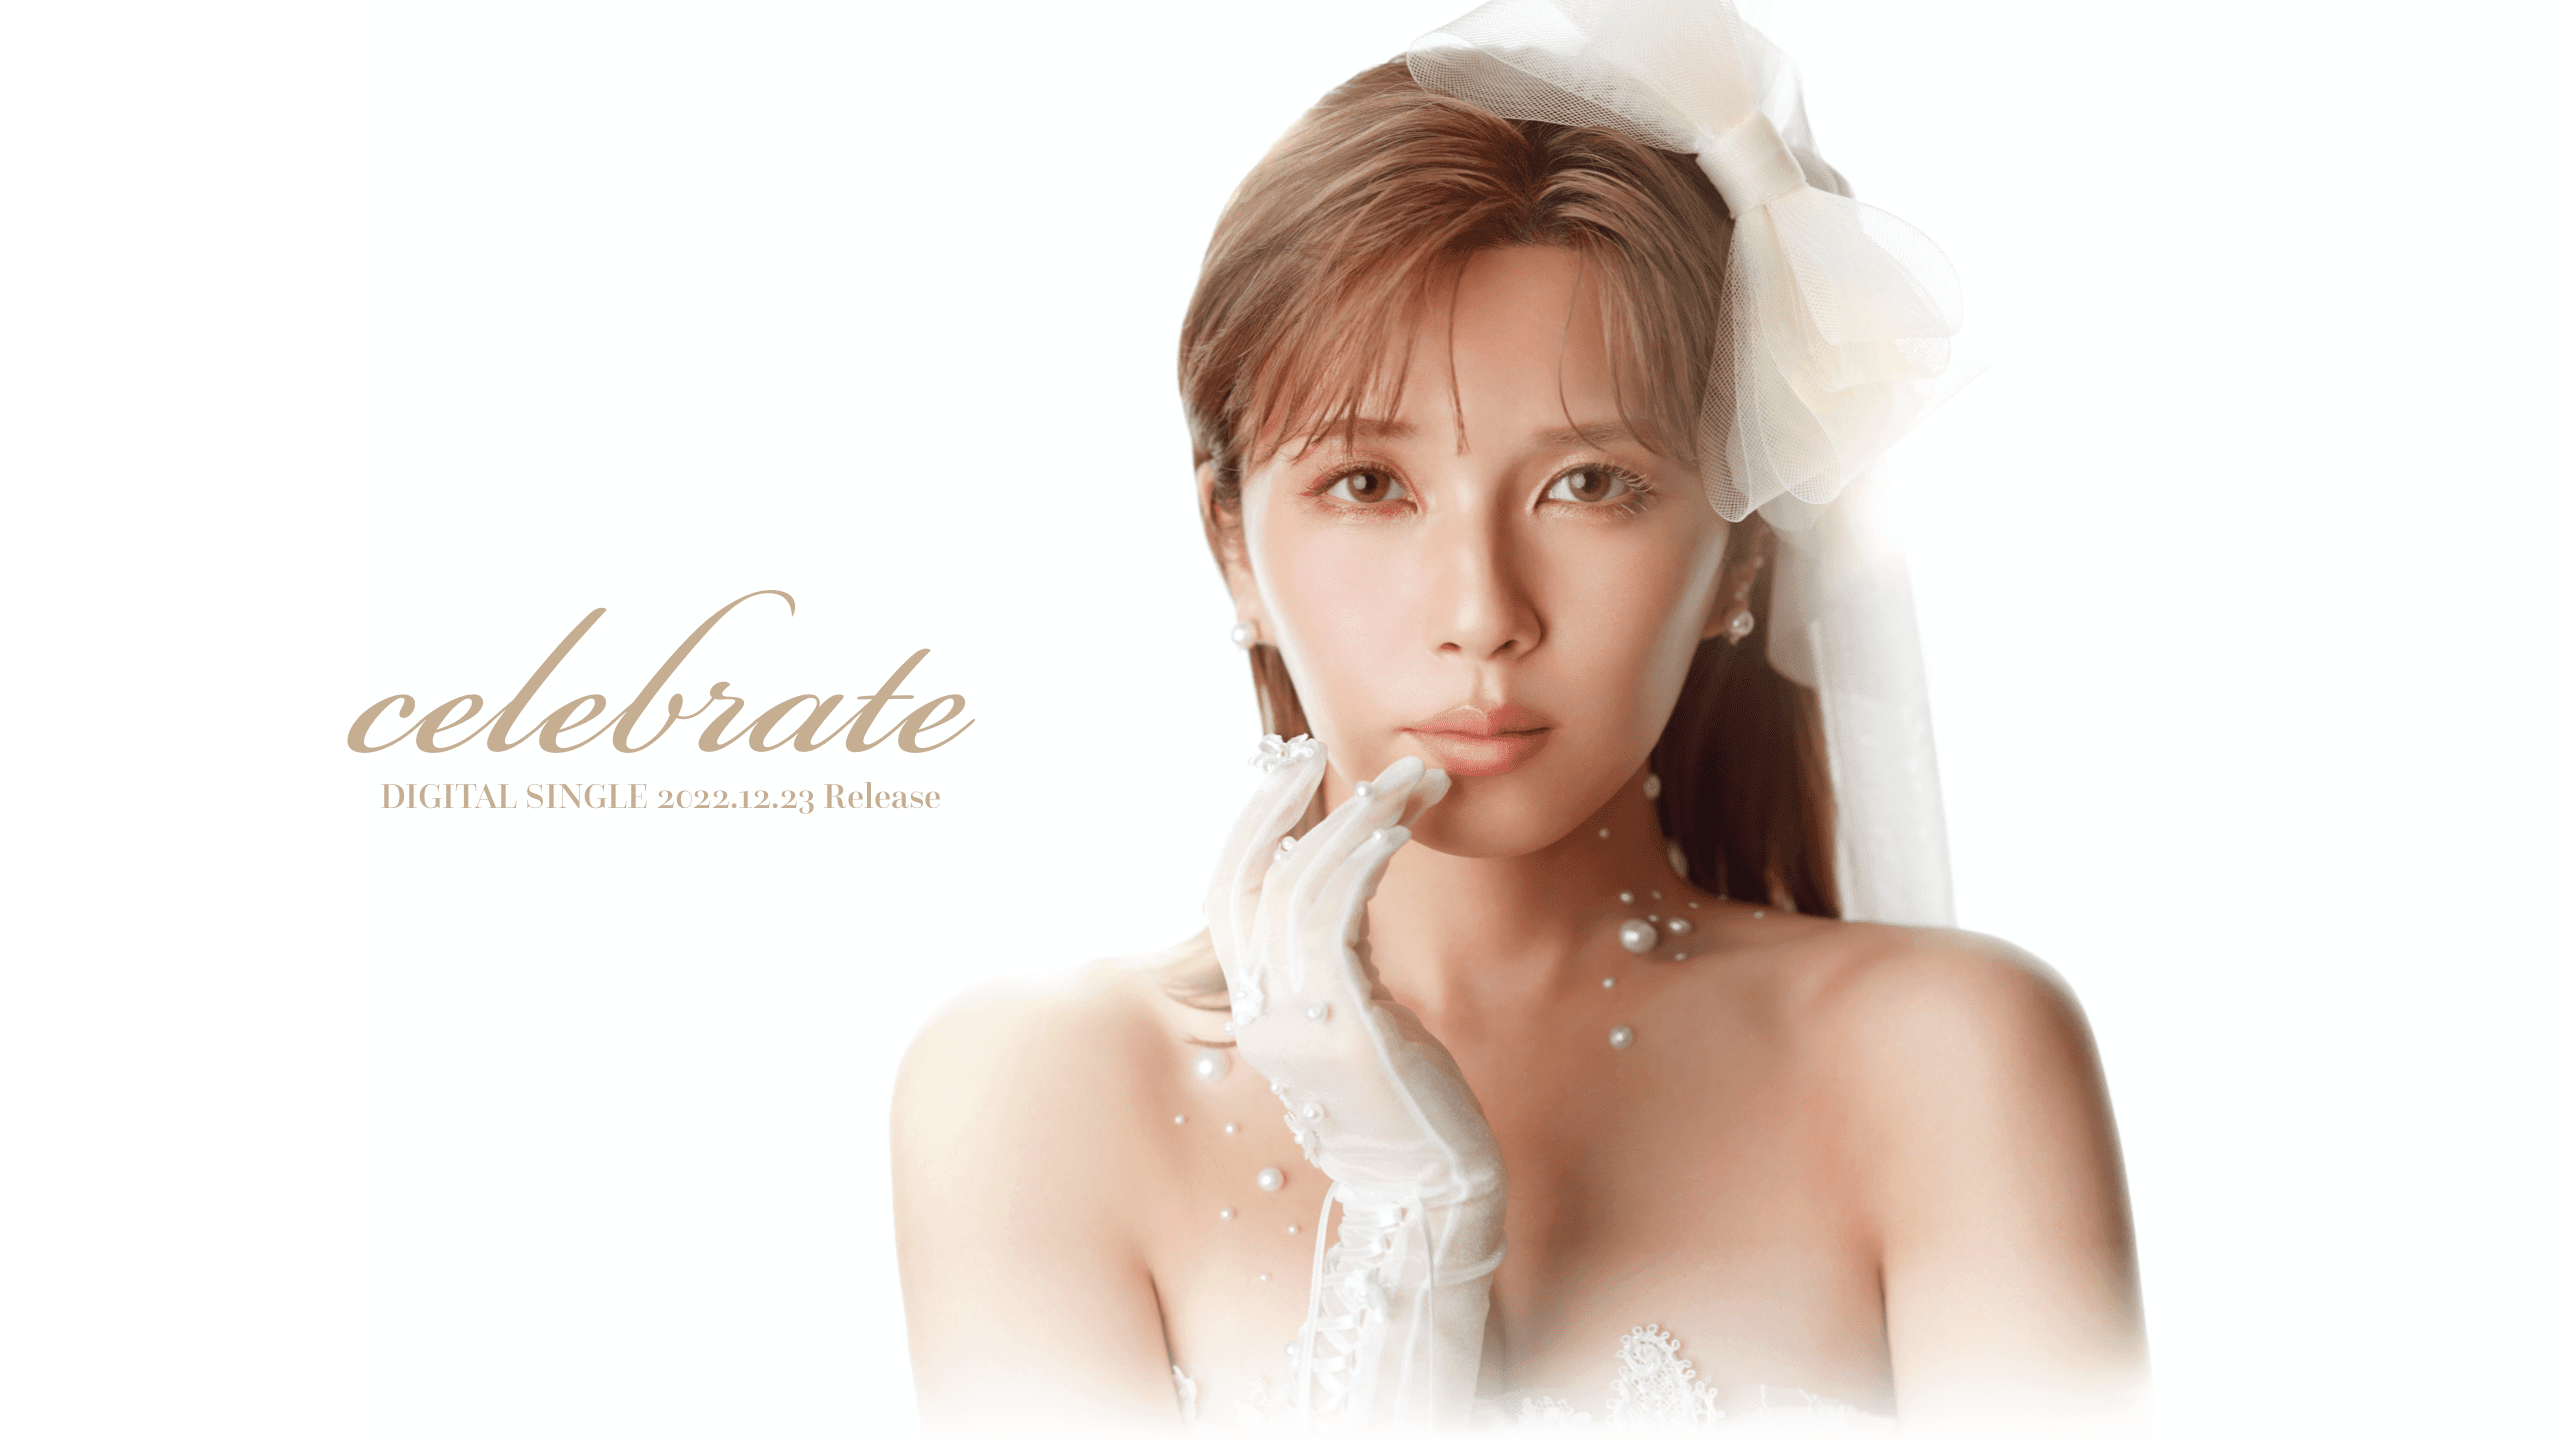 宇野実彩子(AAA) New Digital Single「celebrate」特設サイト